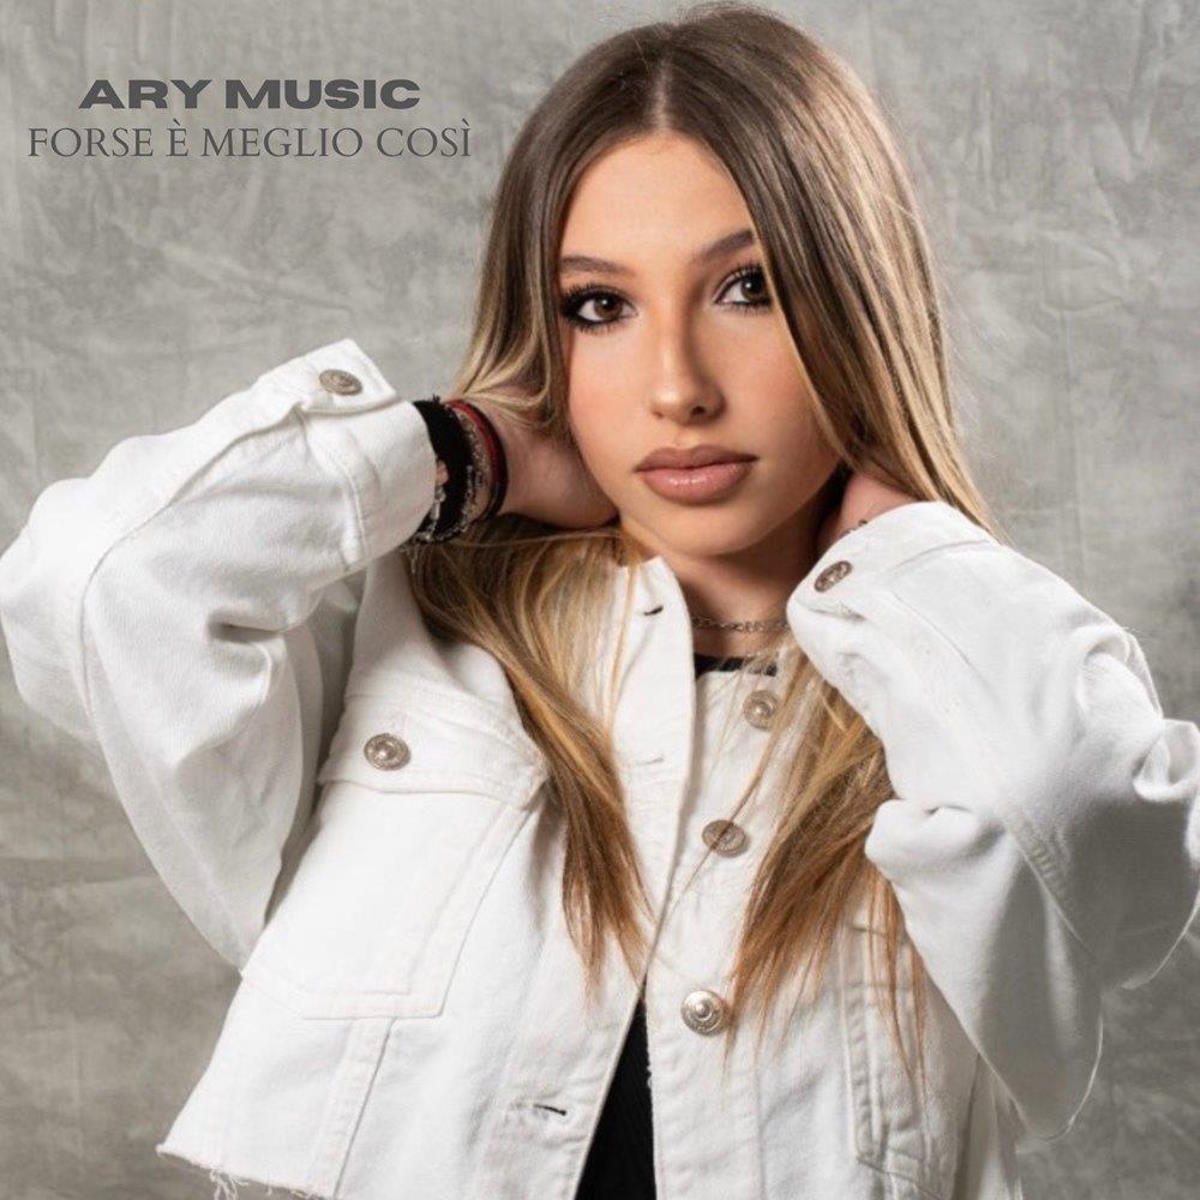 Ary Music in radio con un nuovo singolo